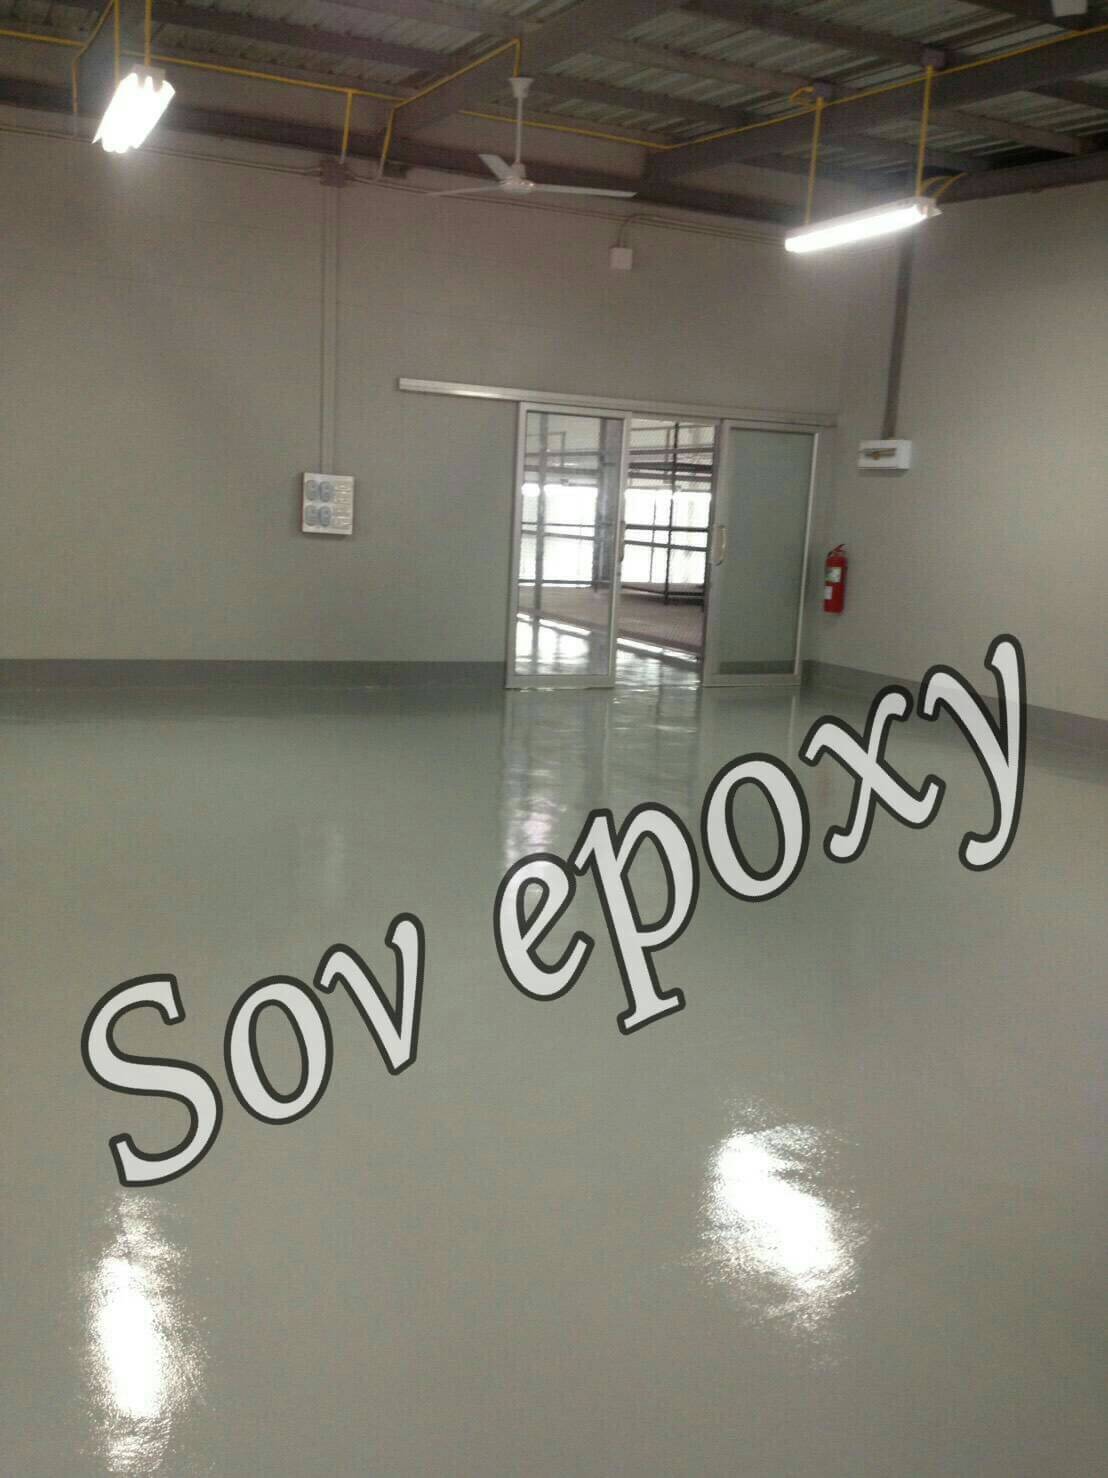 งานพื้น Epoxy Coating โครงการโรงงานนิสา ผลิตชุดชั้นใน จ.กาญจบุรี พื้นที่ 1,900 ตรม 1